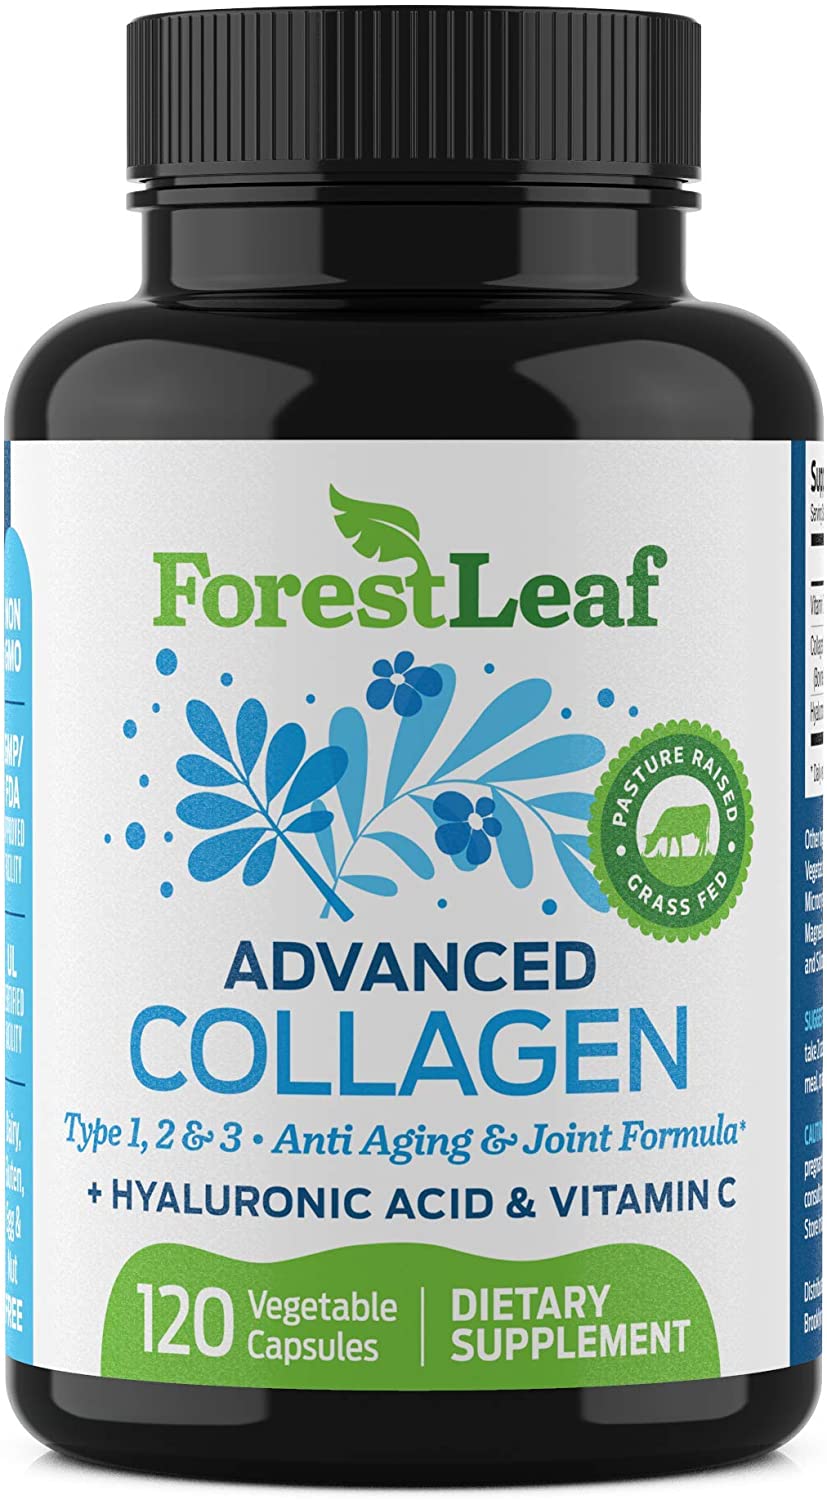 2. ForestLeaf Advanced Collagen Supplement